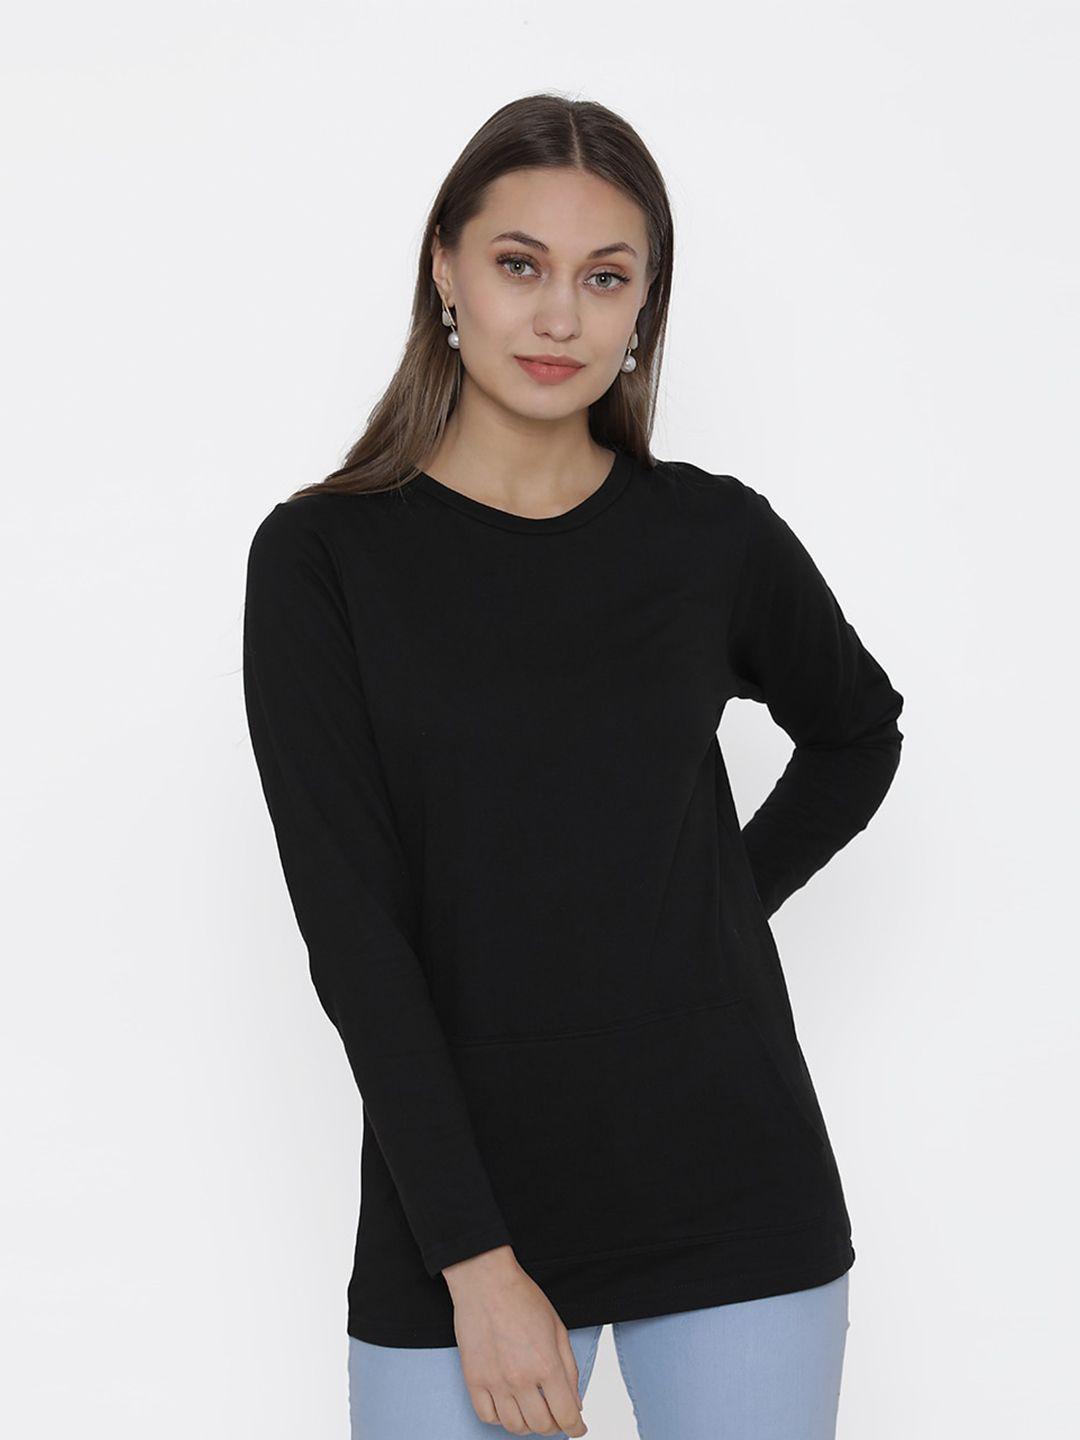 door74 women black long sleeves cotton t-shirt